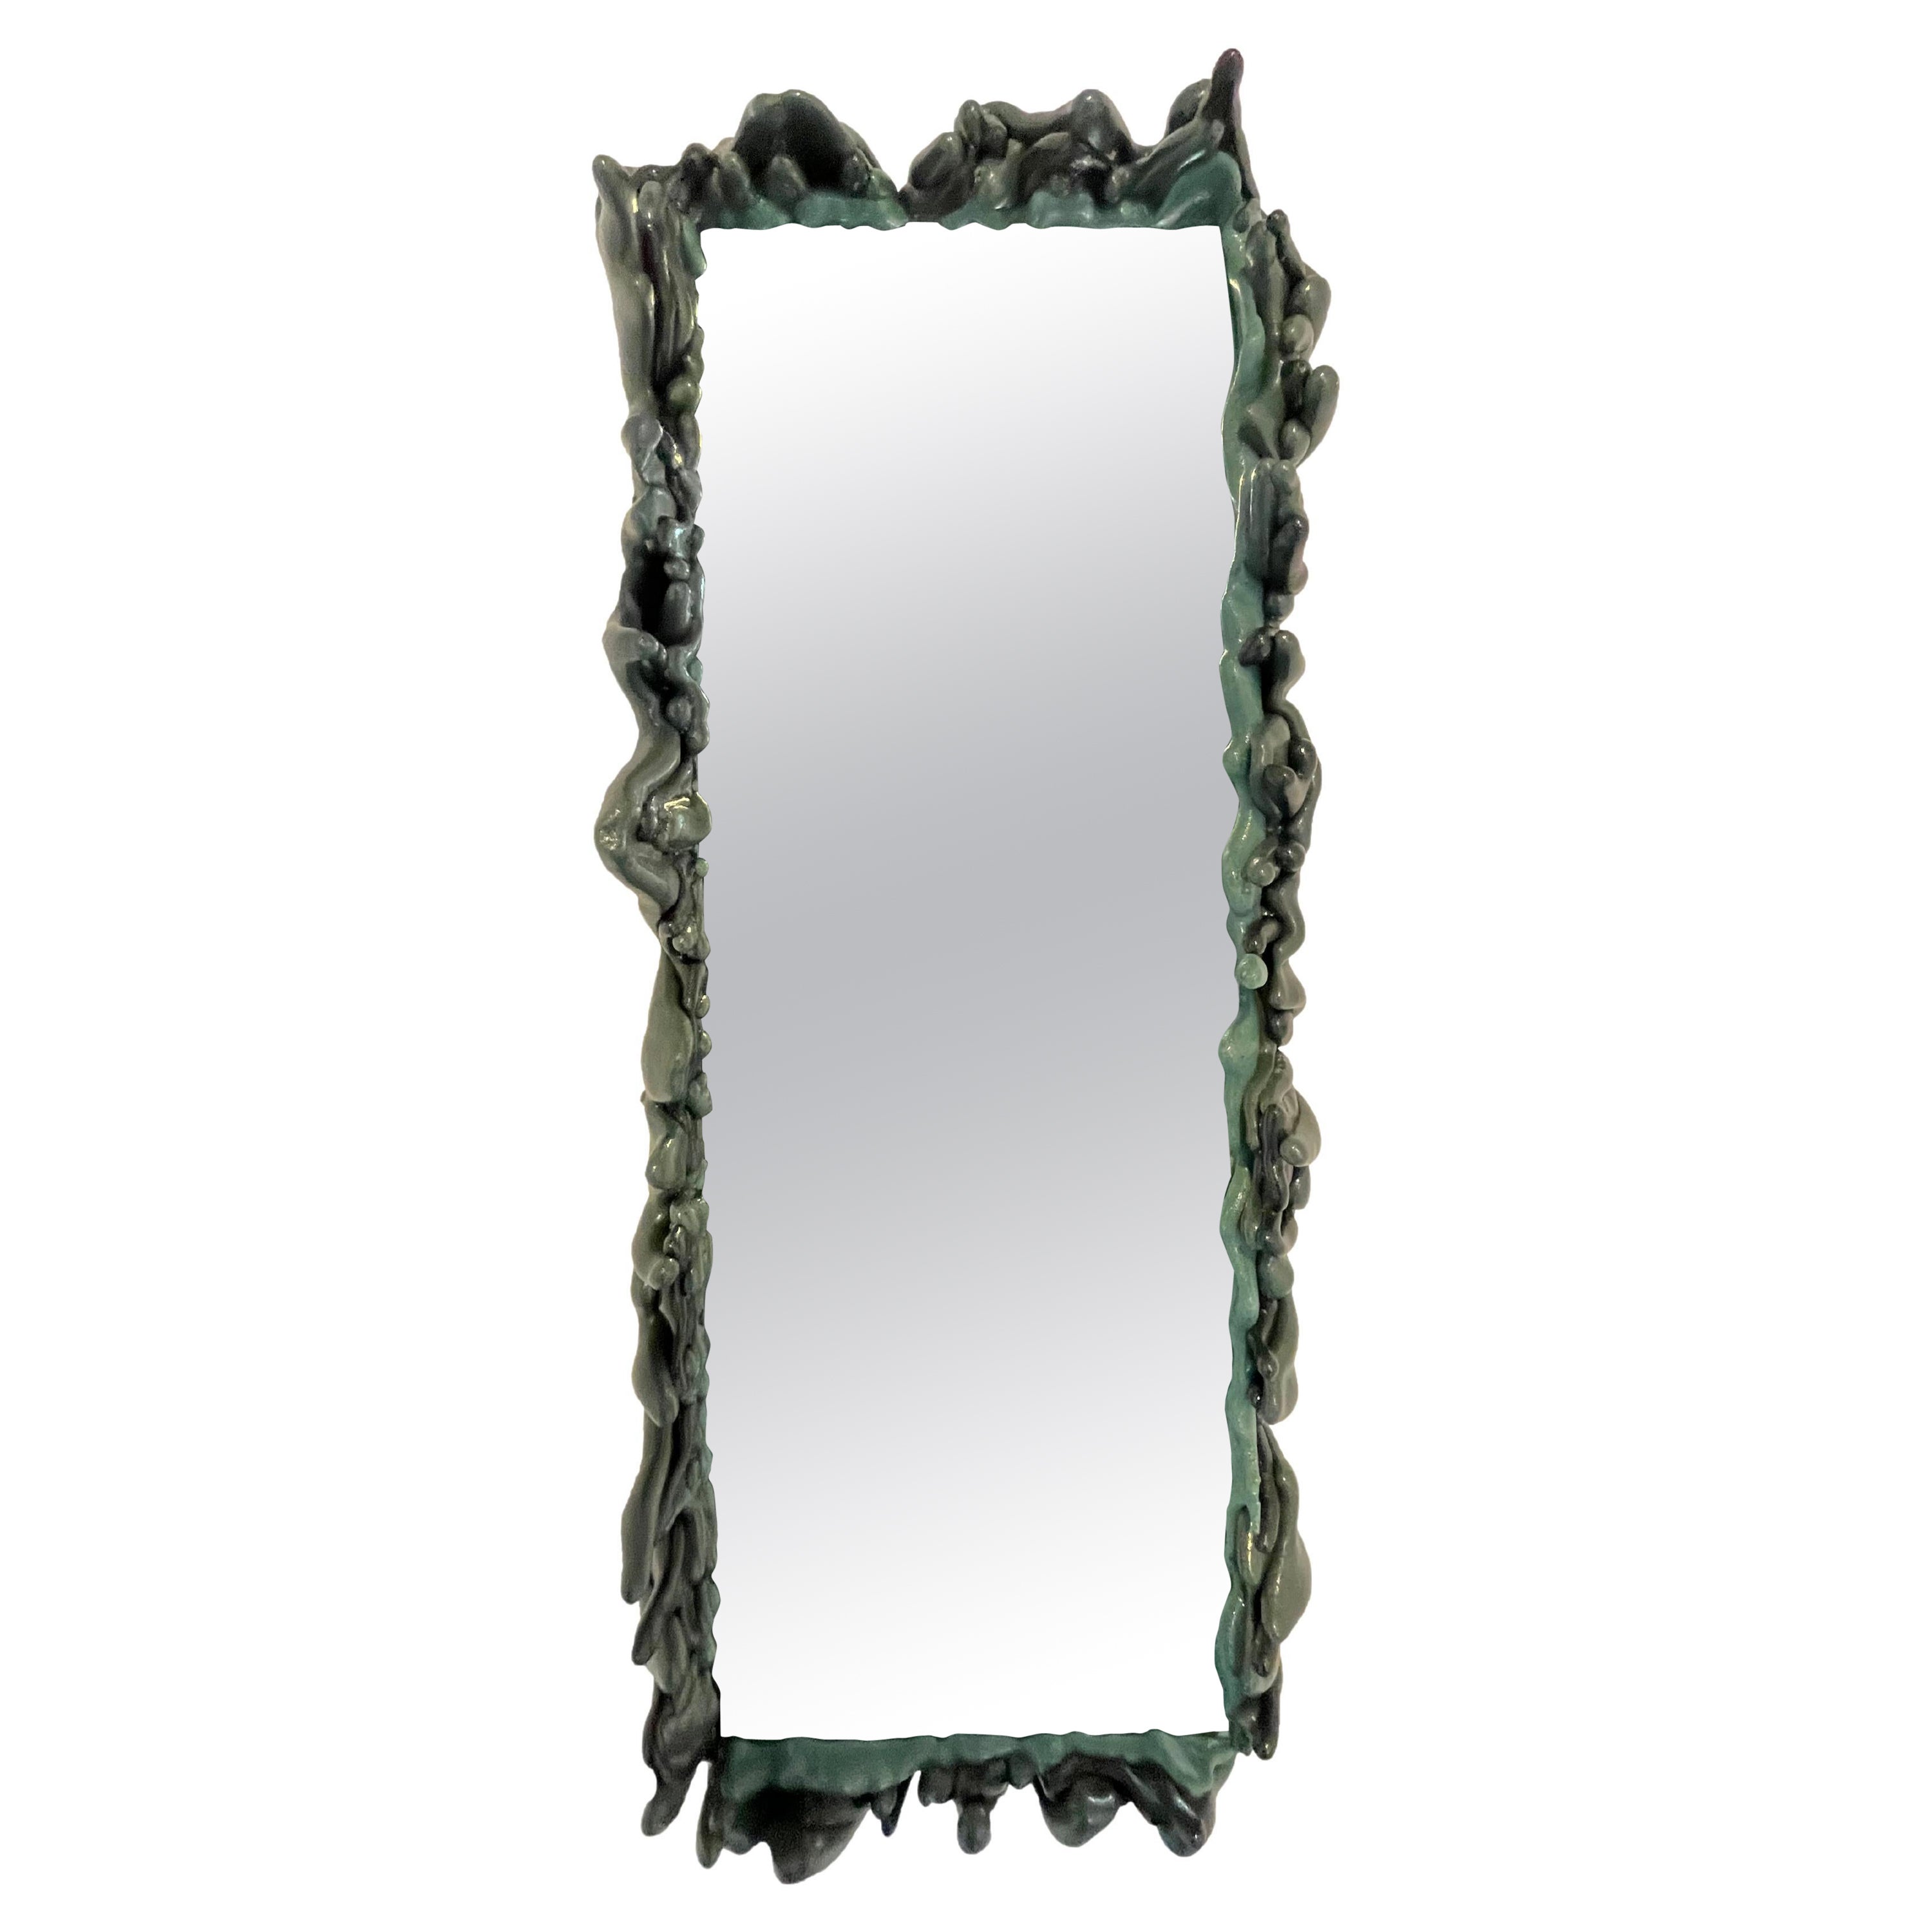 La série de miroirs 